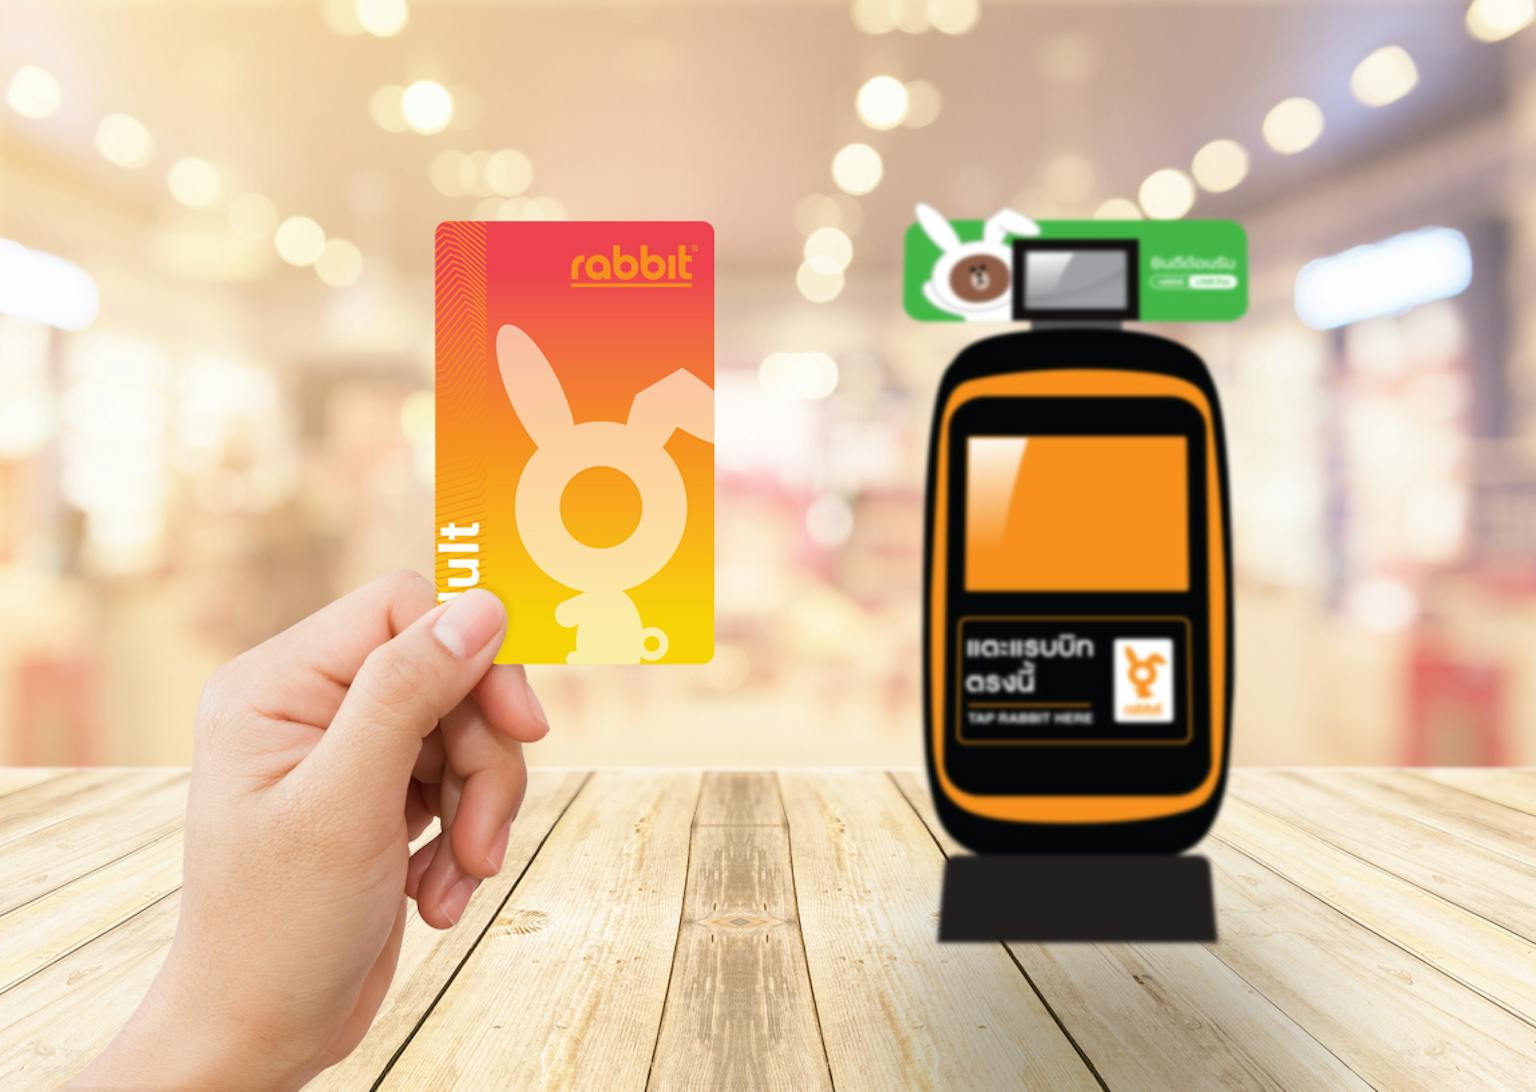 บัตรแรบบิทใช้งานอย่างไร? | Moneyduck Thailand